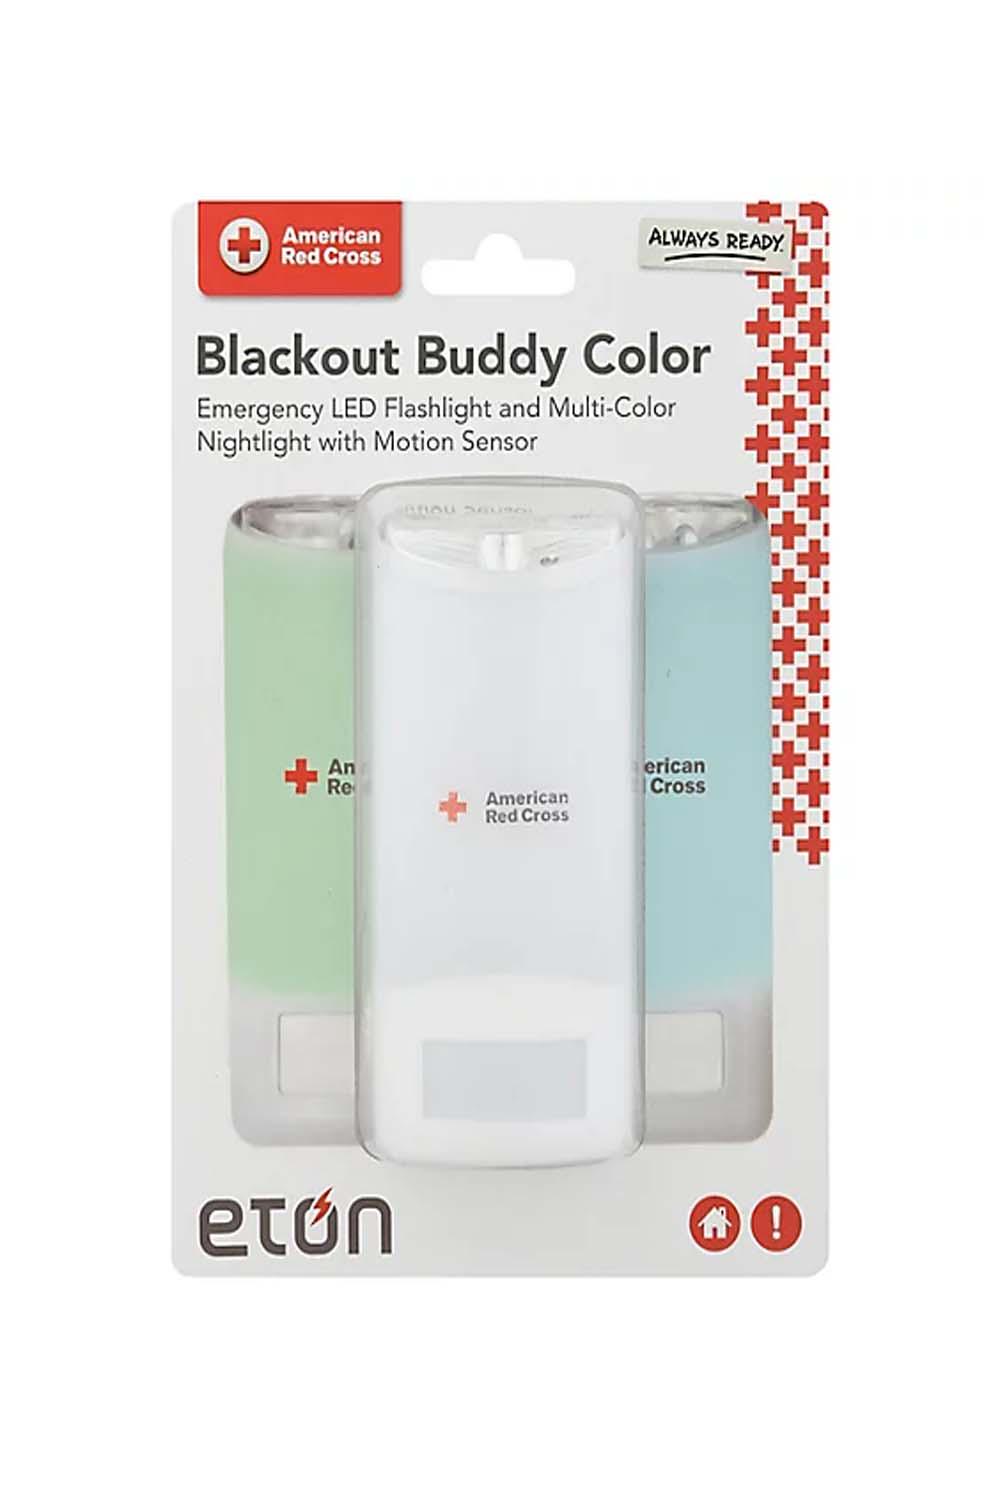 Blackout Buddy Emergency Flashlight